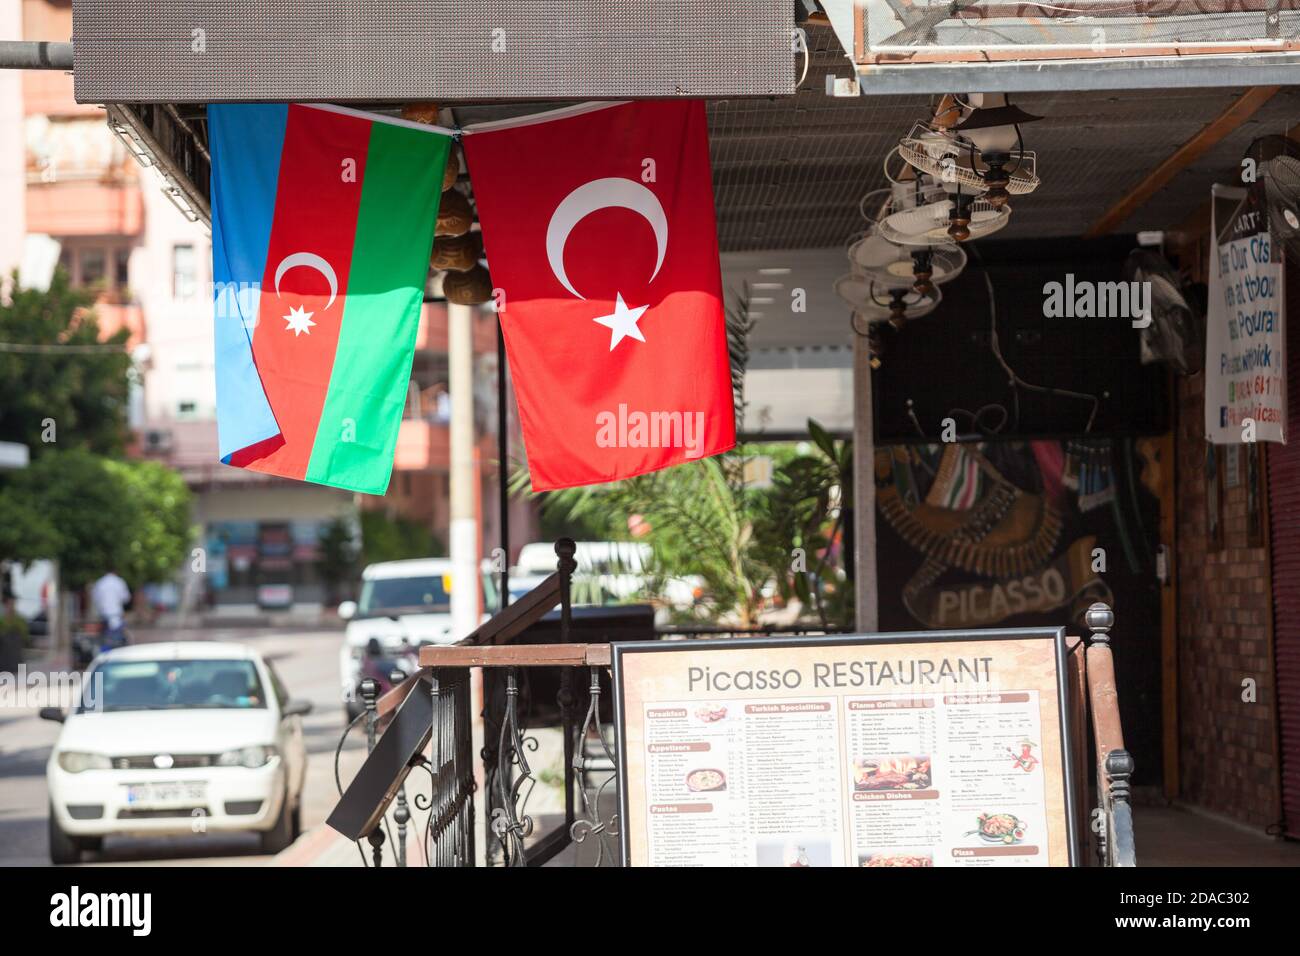 Le drapeau national de la République d'Azerbaïdjan et le drapeau turc sont suspendus dans un café ou un restaurant dans la rue urbaine. Rues de la ville décorées. Alanya, T. Banque D'Images